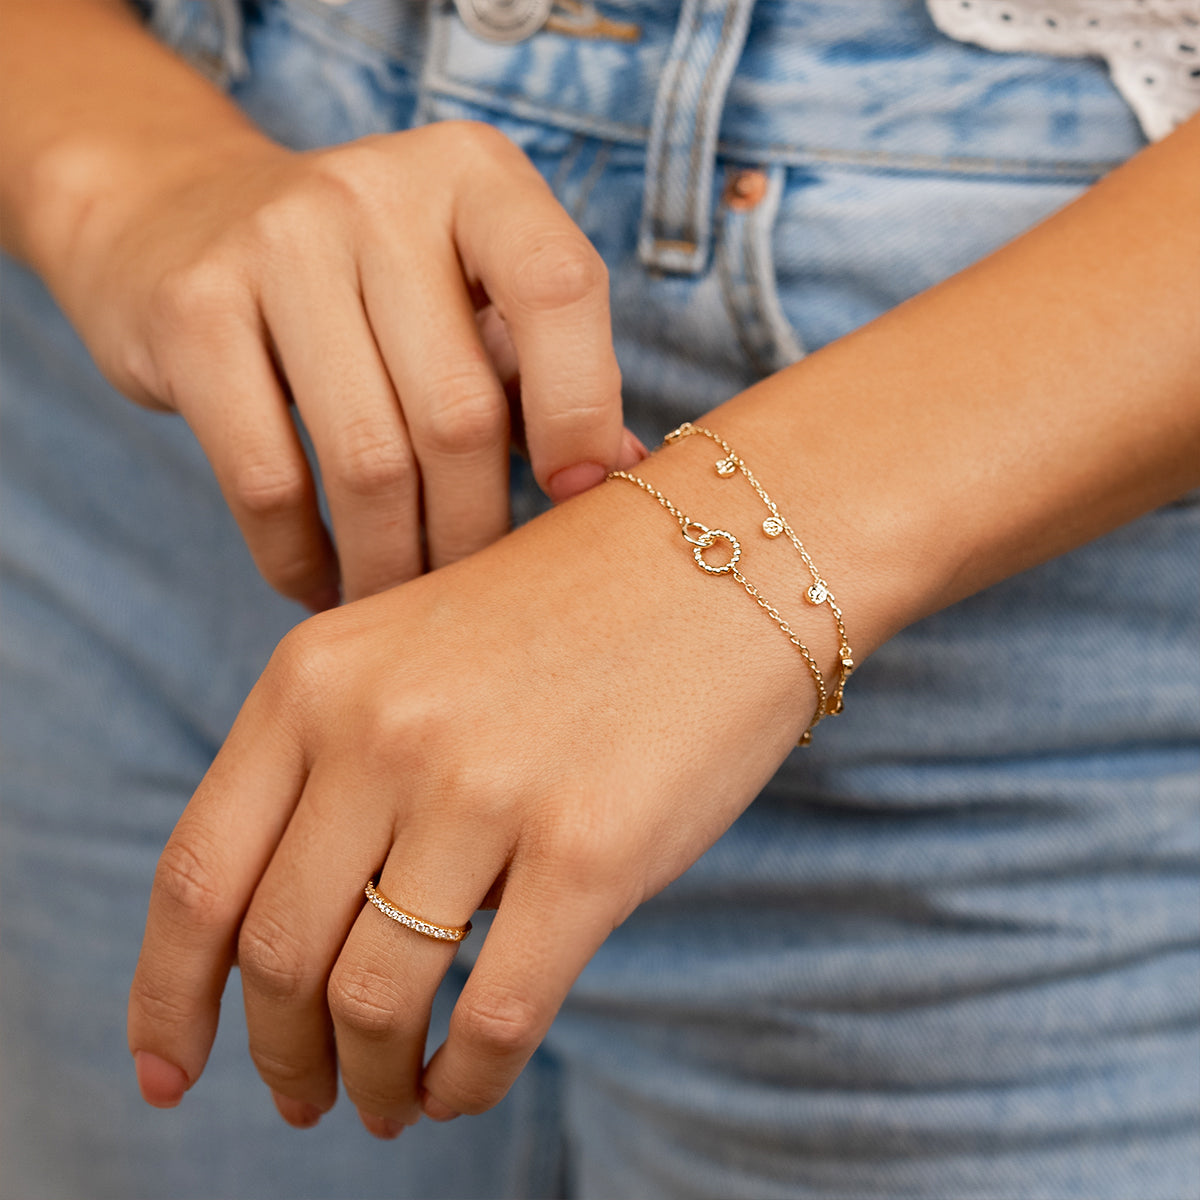 Woman wearing gold chain bracelet